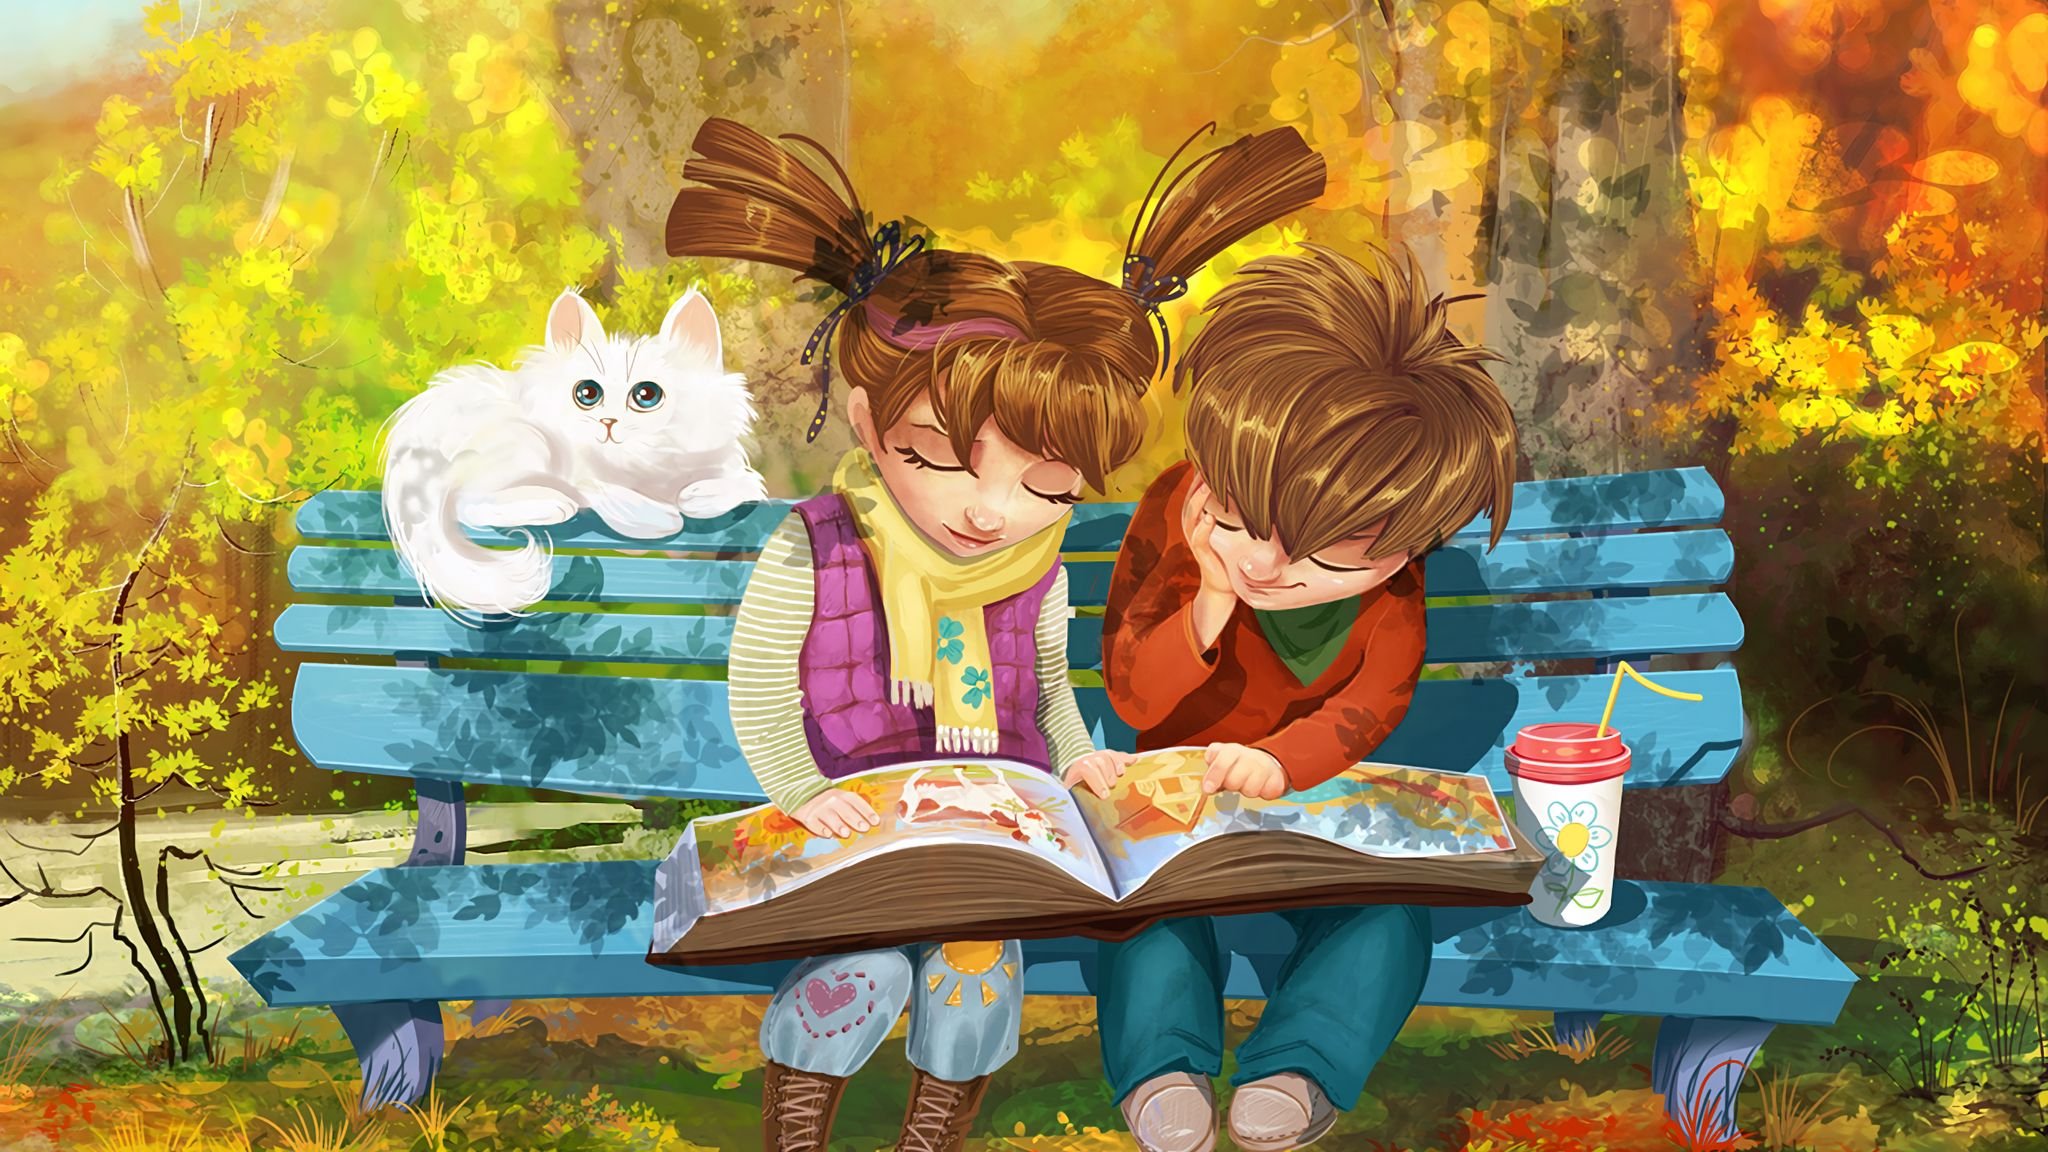 Библиотеки читают сказки. Пойман за чтением. Лето с книжкой на скамейке. Иллюстрации к книгам. Мальчик и девочка на скамейке.